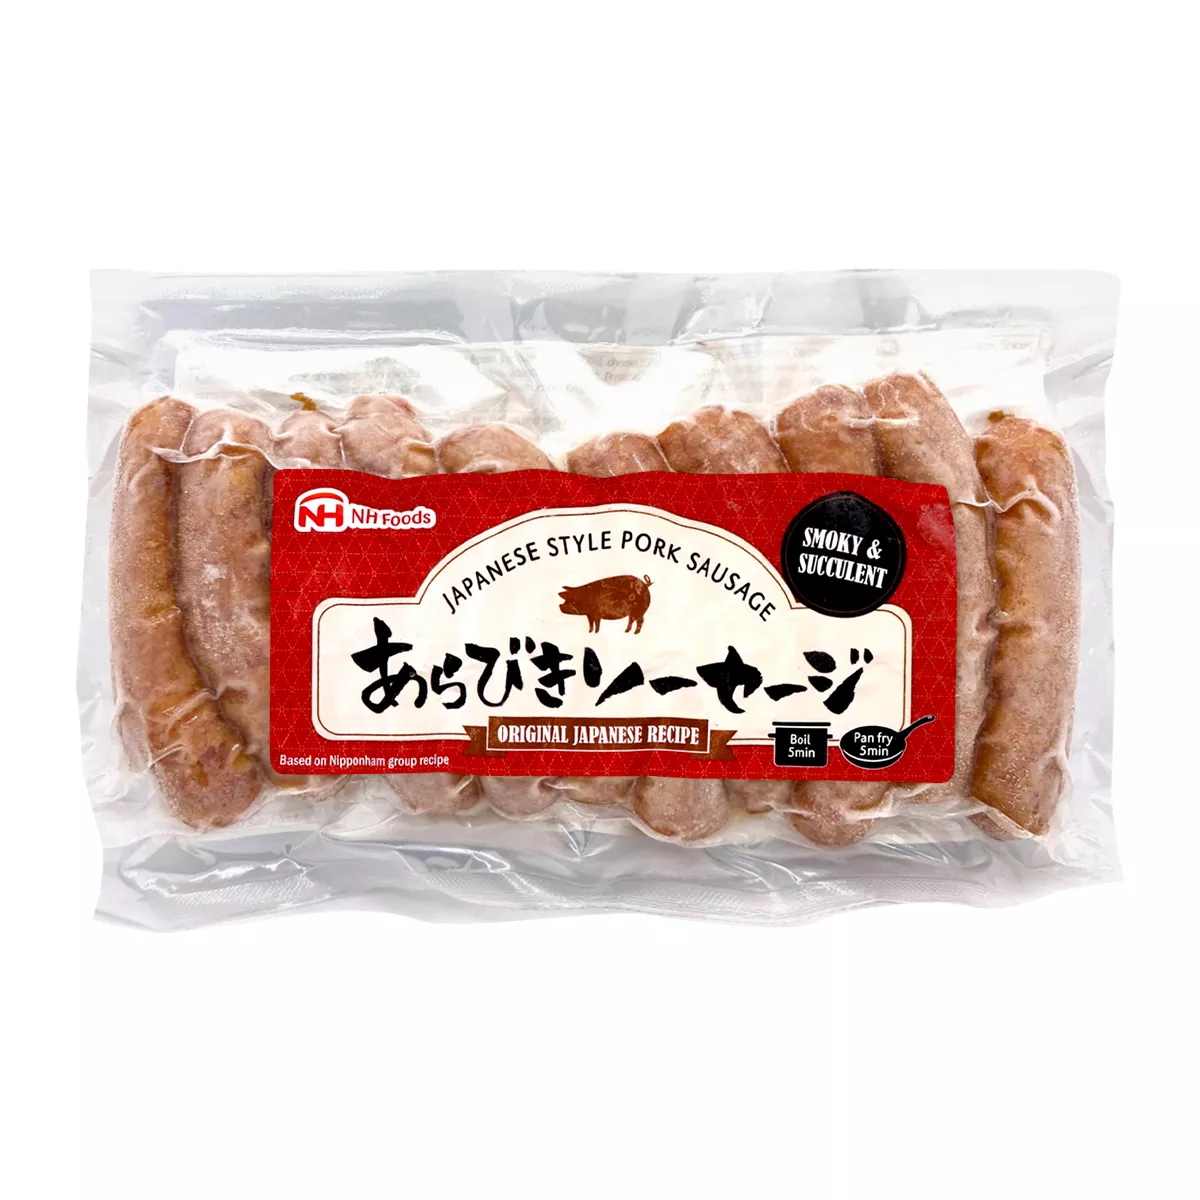 Japanese Style Pork sausage (smokey) NH FOODS 200g, [],asianfood.ro